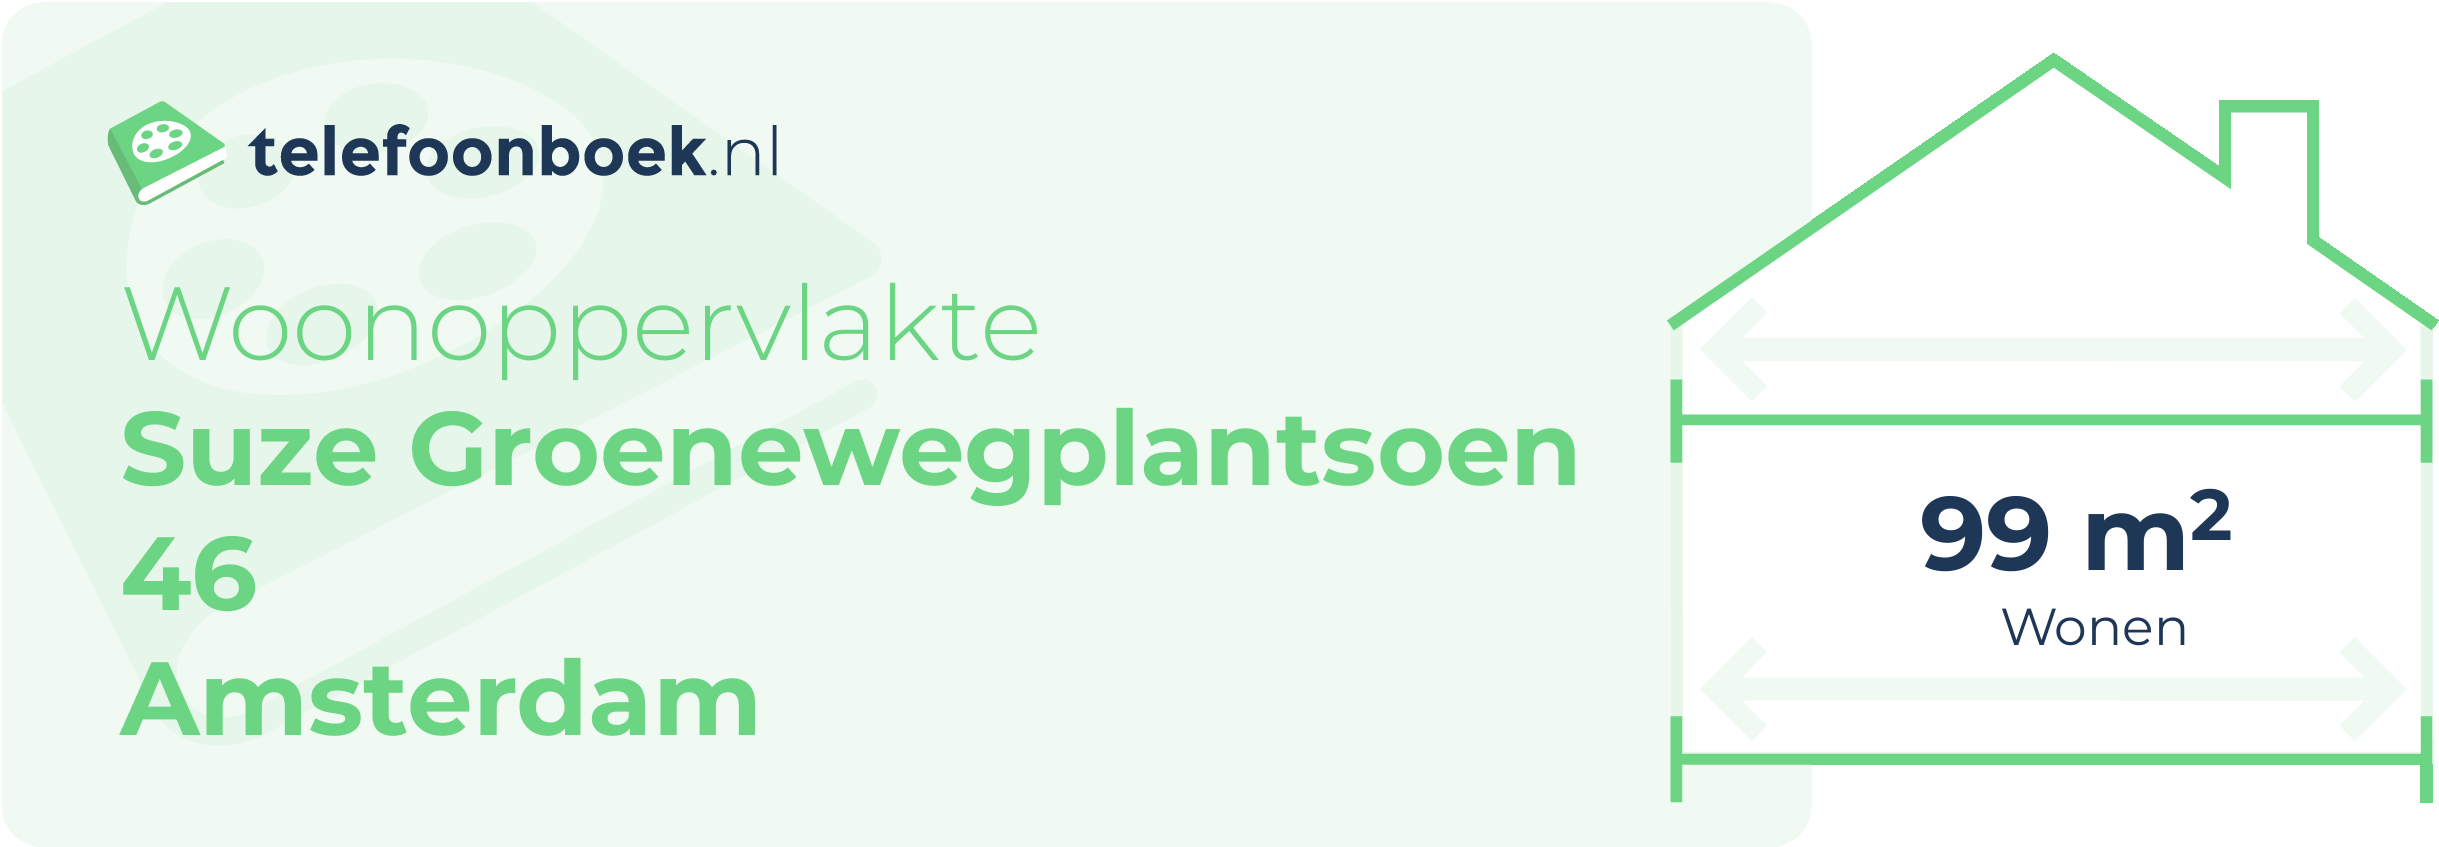 Woonoppervlakte Suze Groenewegplantsoen 46 Amsterdam